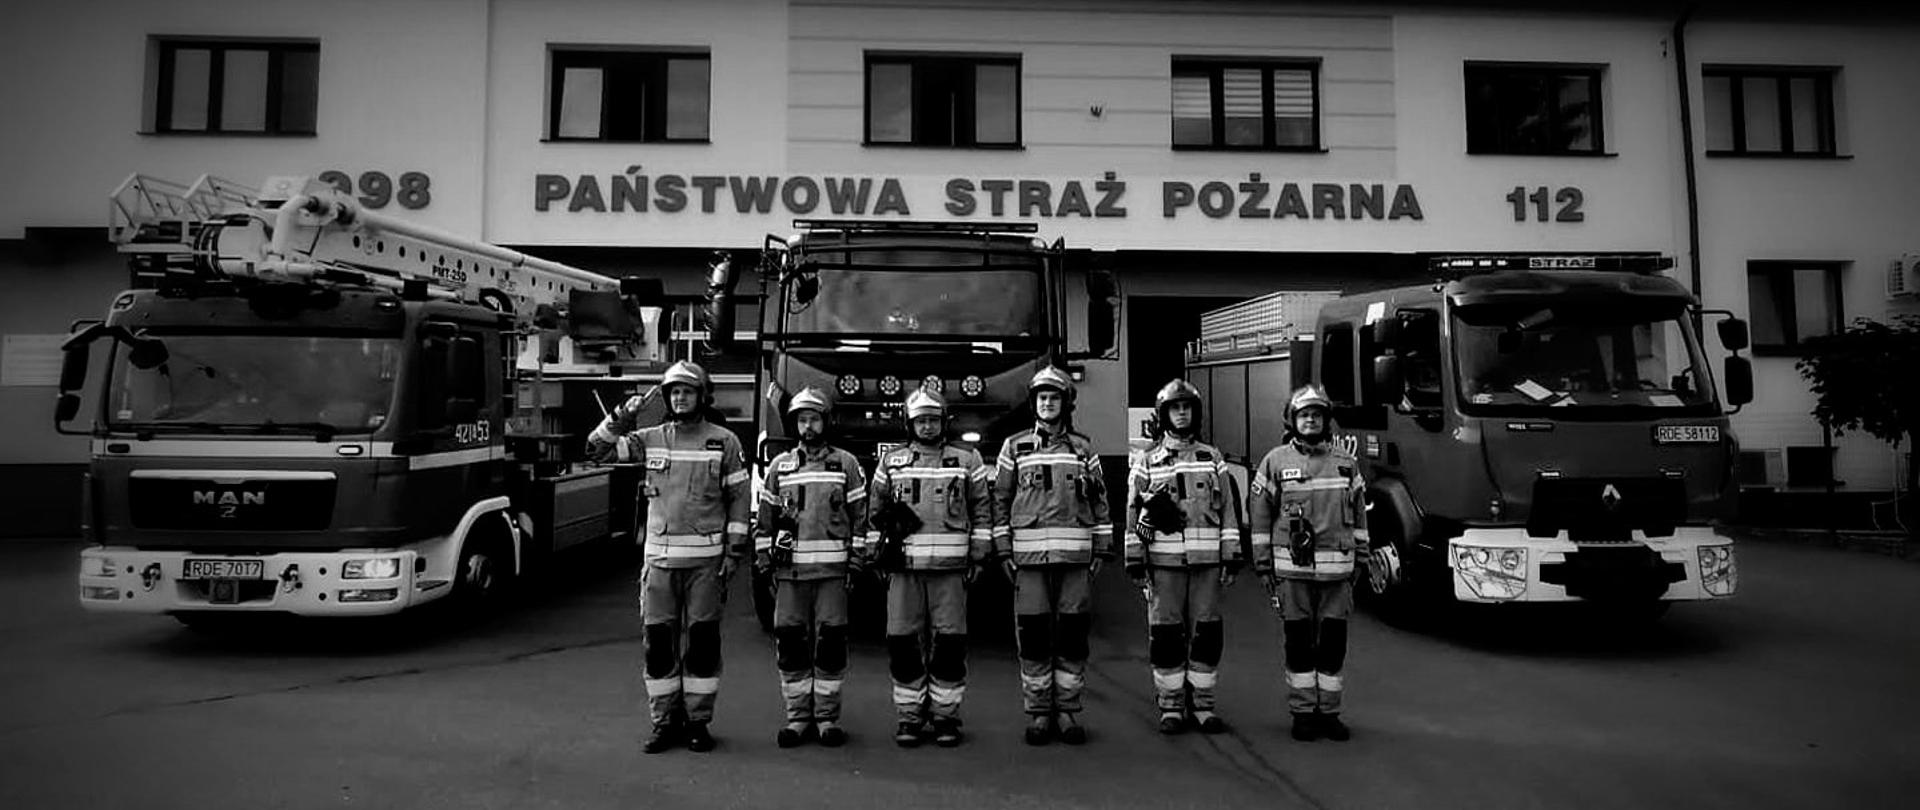 Na zdjęciu sześciu strażakach w ubraniach specjalnych stoi w szeregu. Pierwszy z lewej oddaje salut. Za nimi ustawione samochody pożarnicze. Nad samochodami, na ścianie budynku napis Państwowa Straż Pożarna 112.